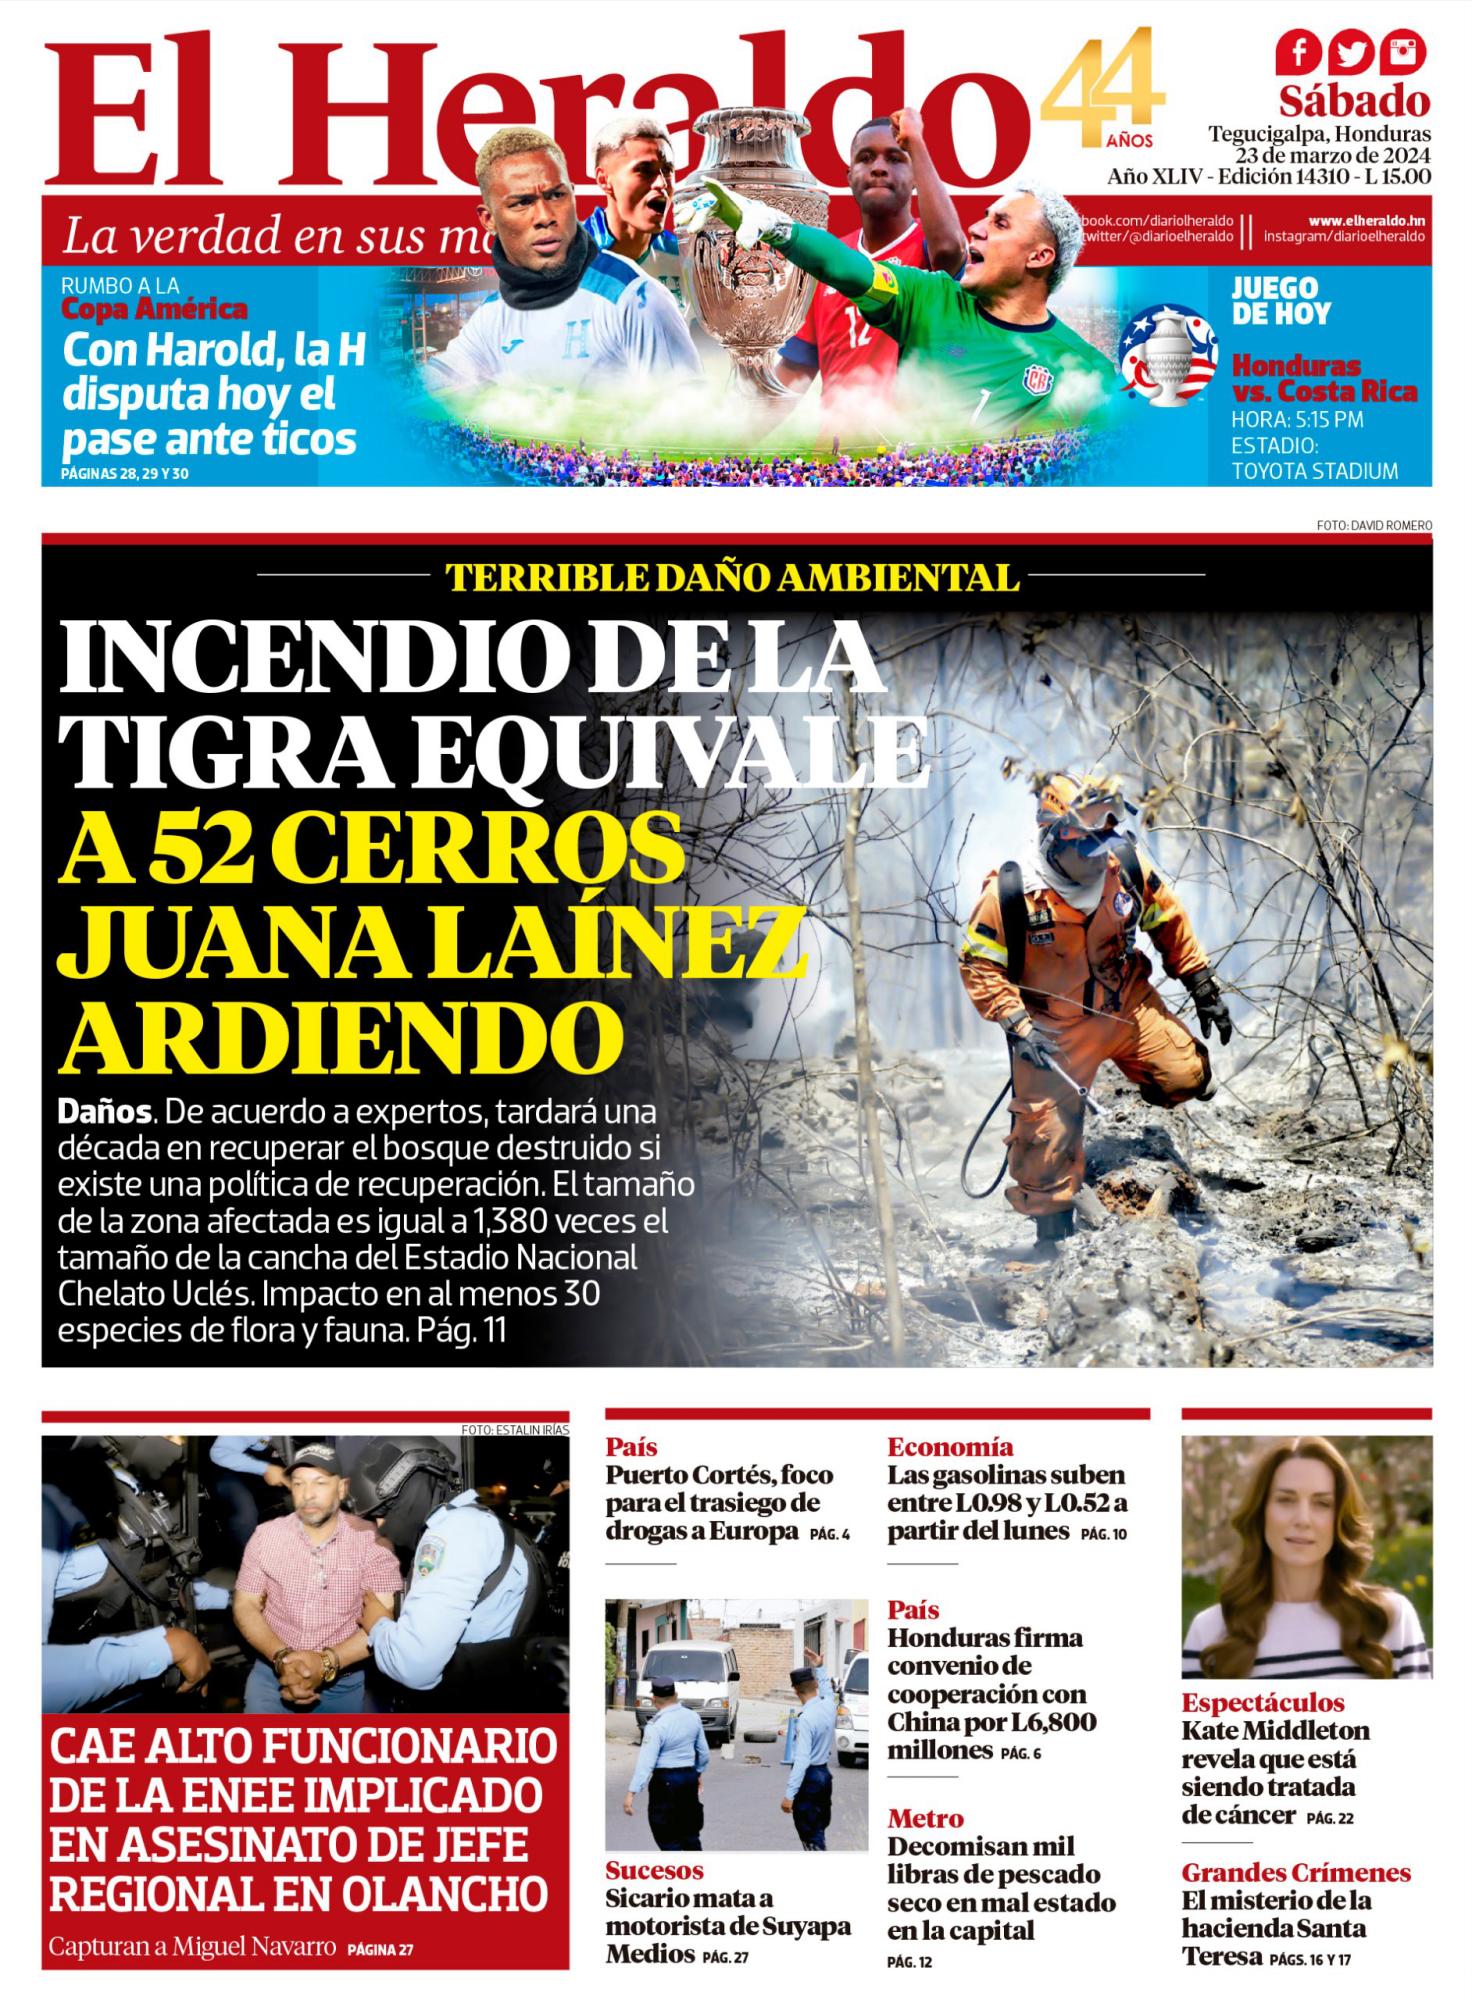 Incendio de La Tigra equivale a 52 cerros Juana Laínez ardiendo